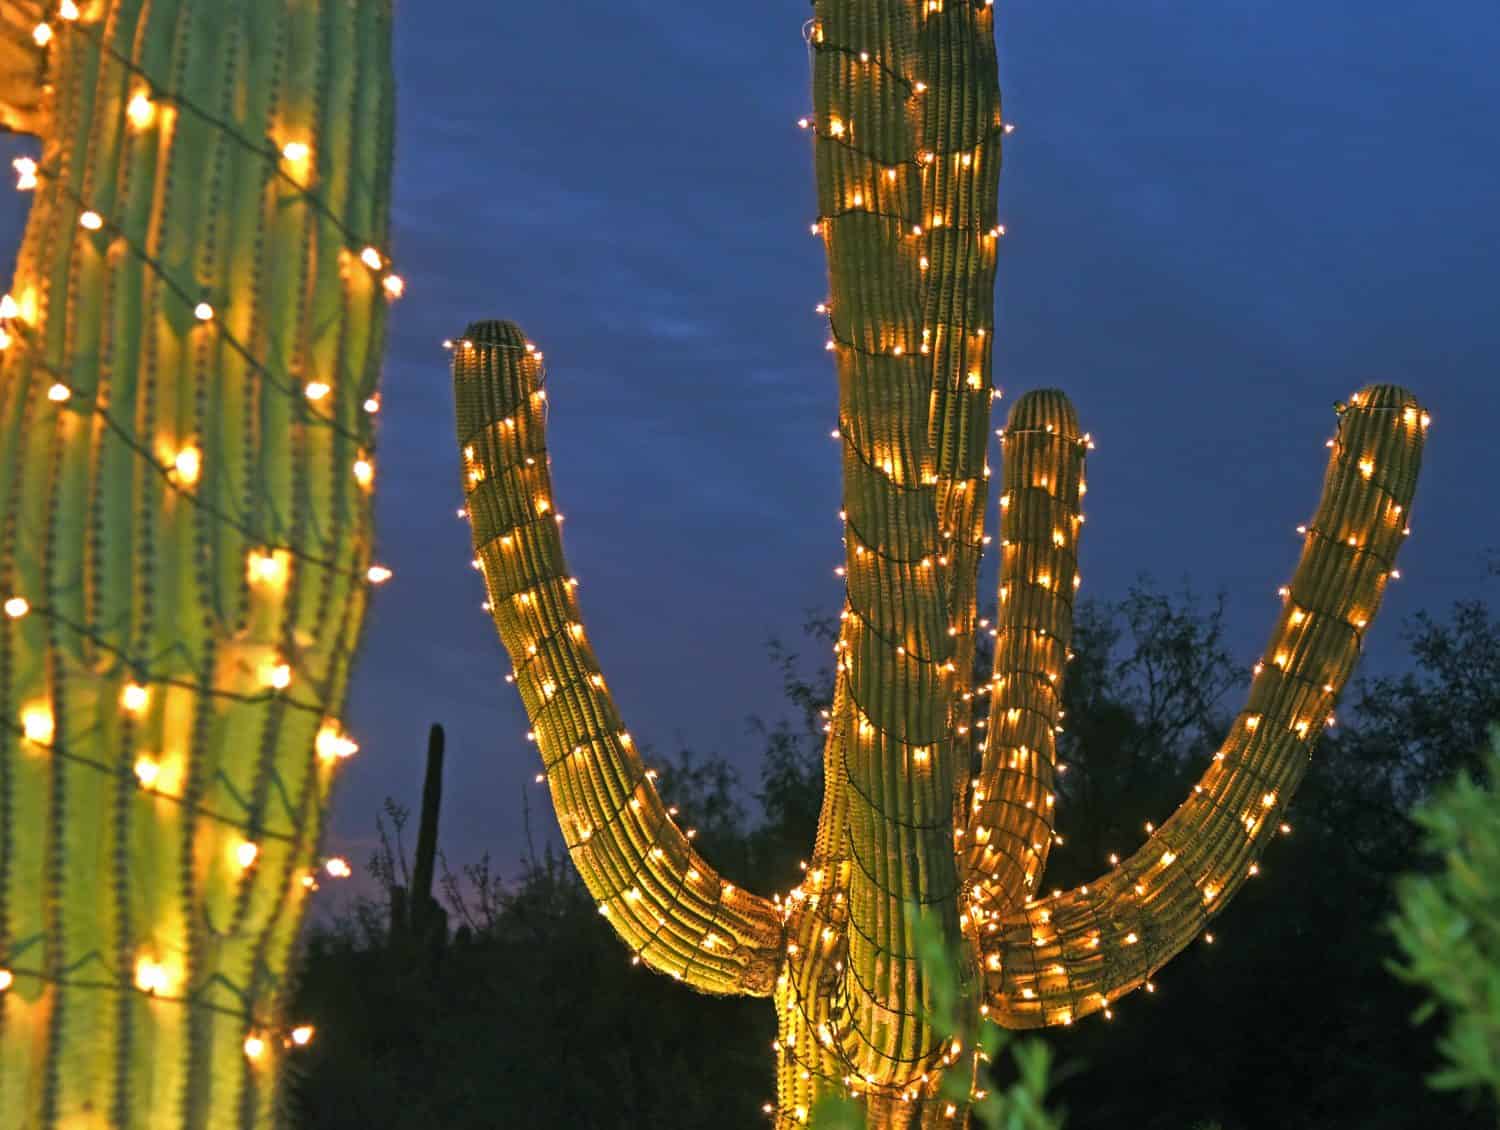 Saguaro cactus with christmas lights